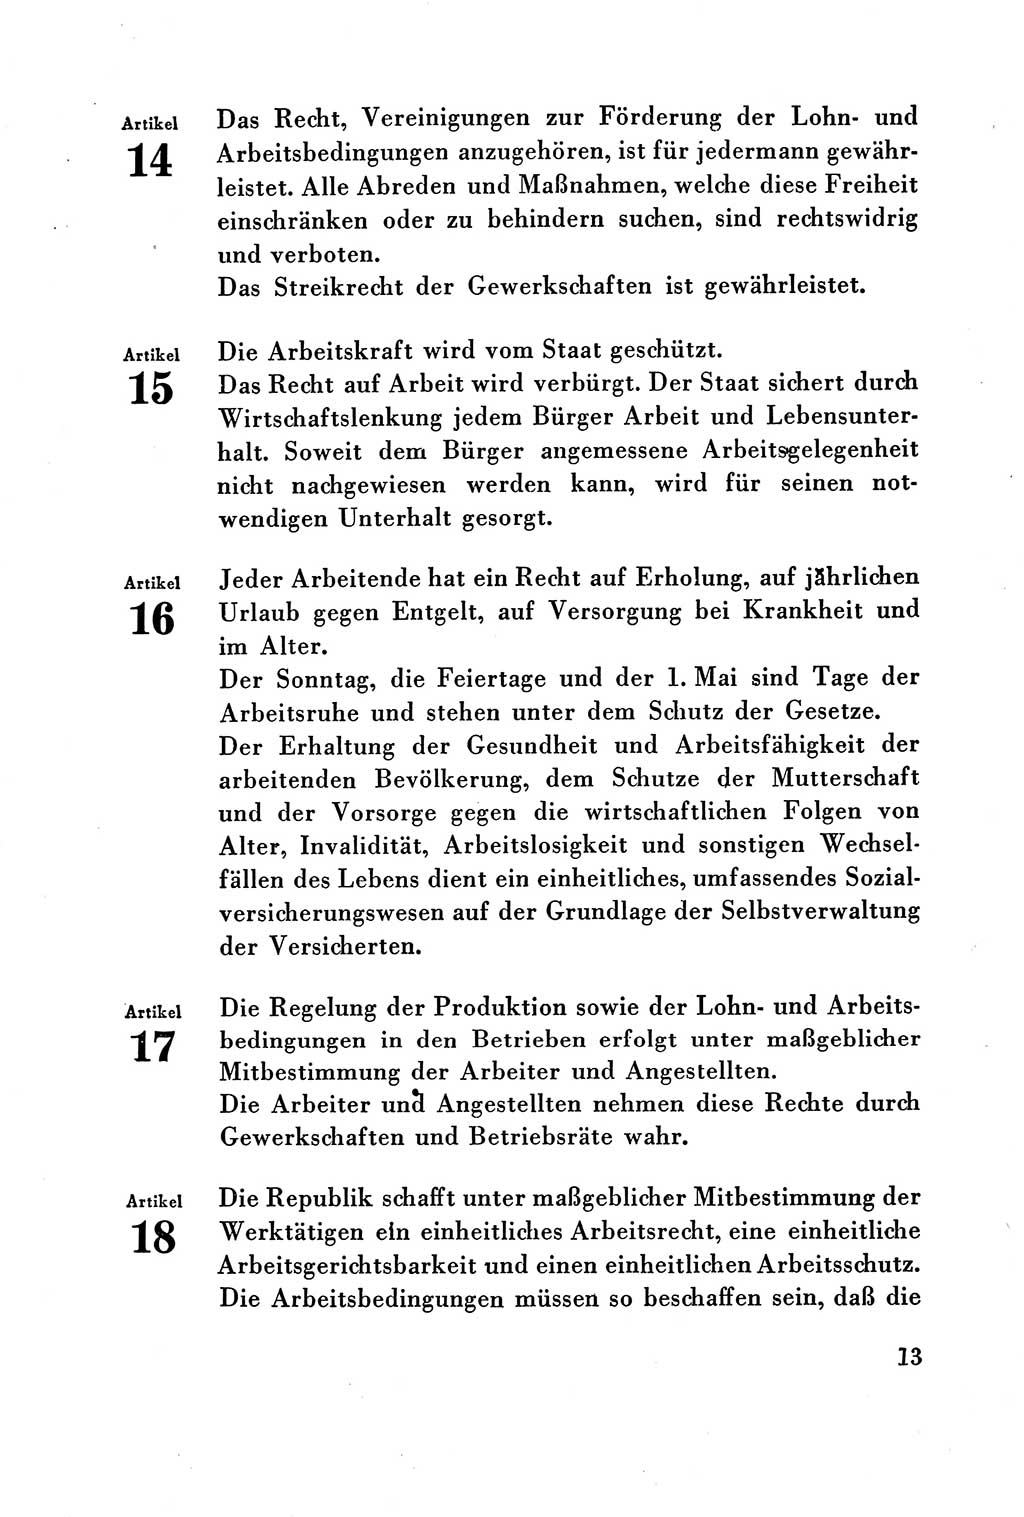 Verfassung der Deutschen Demokratischen Republik (DDR) vom 7. Oktober 1949, Seite 13 (Verf. DDR 1949, S. 13)